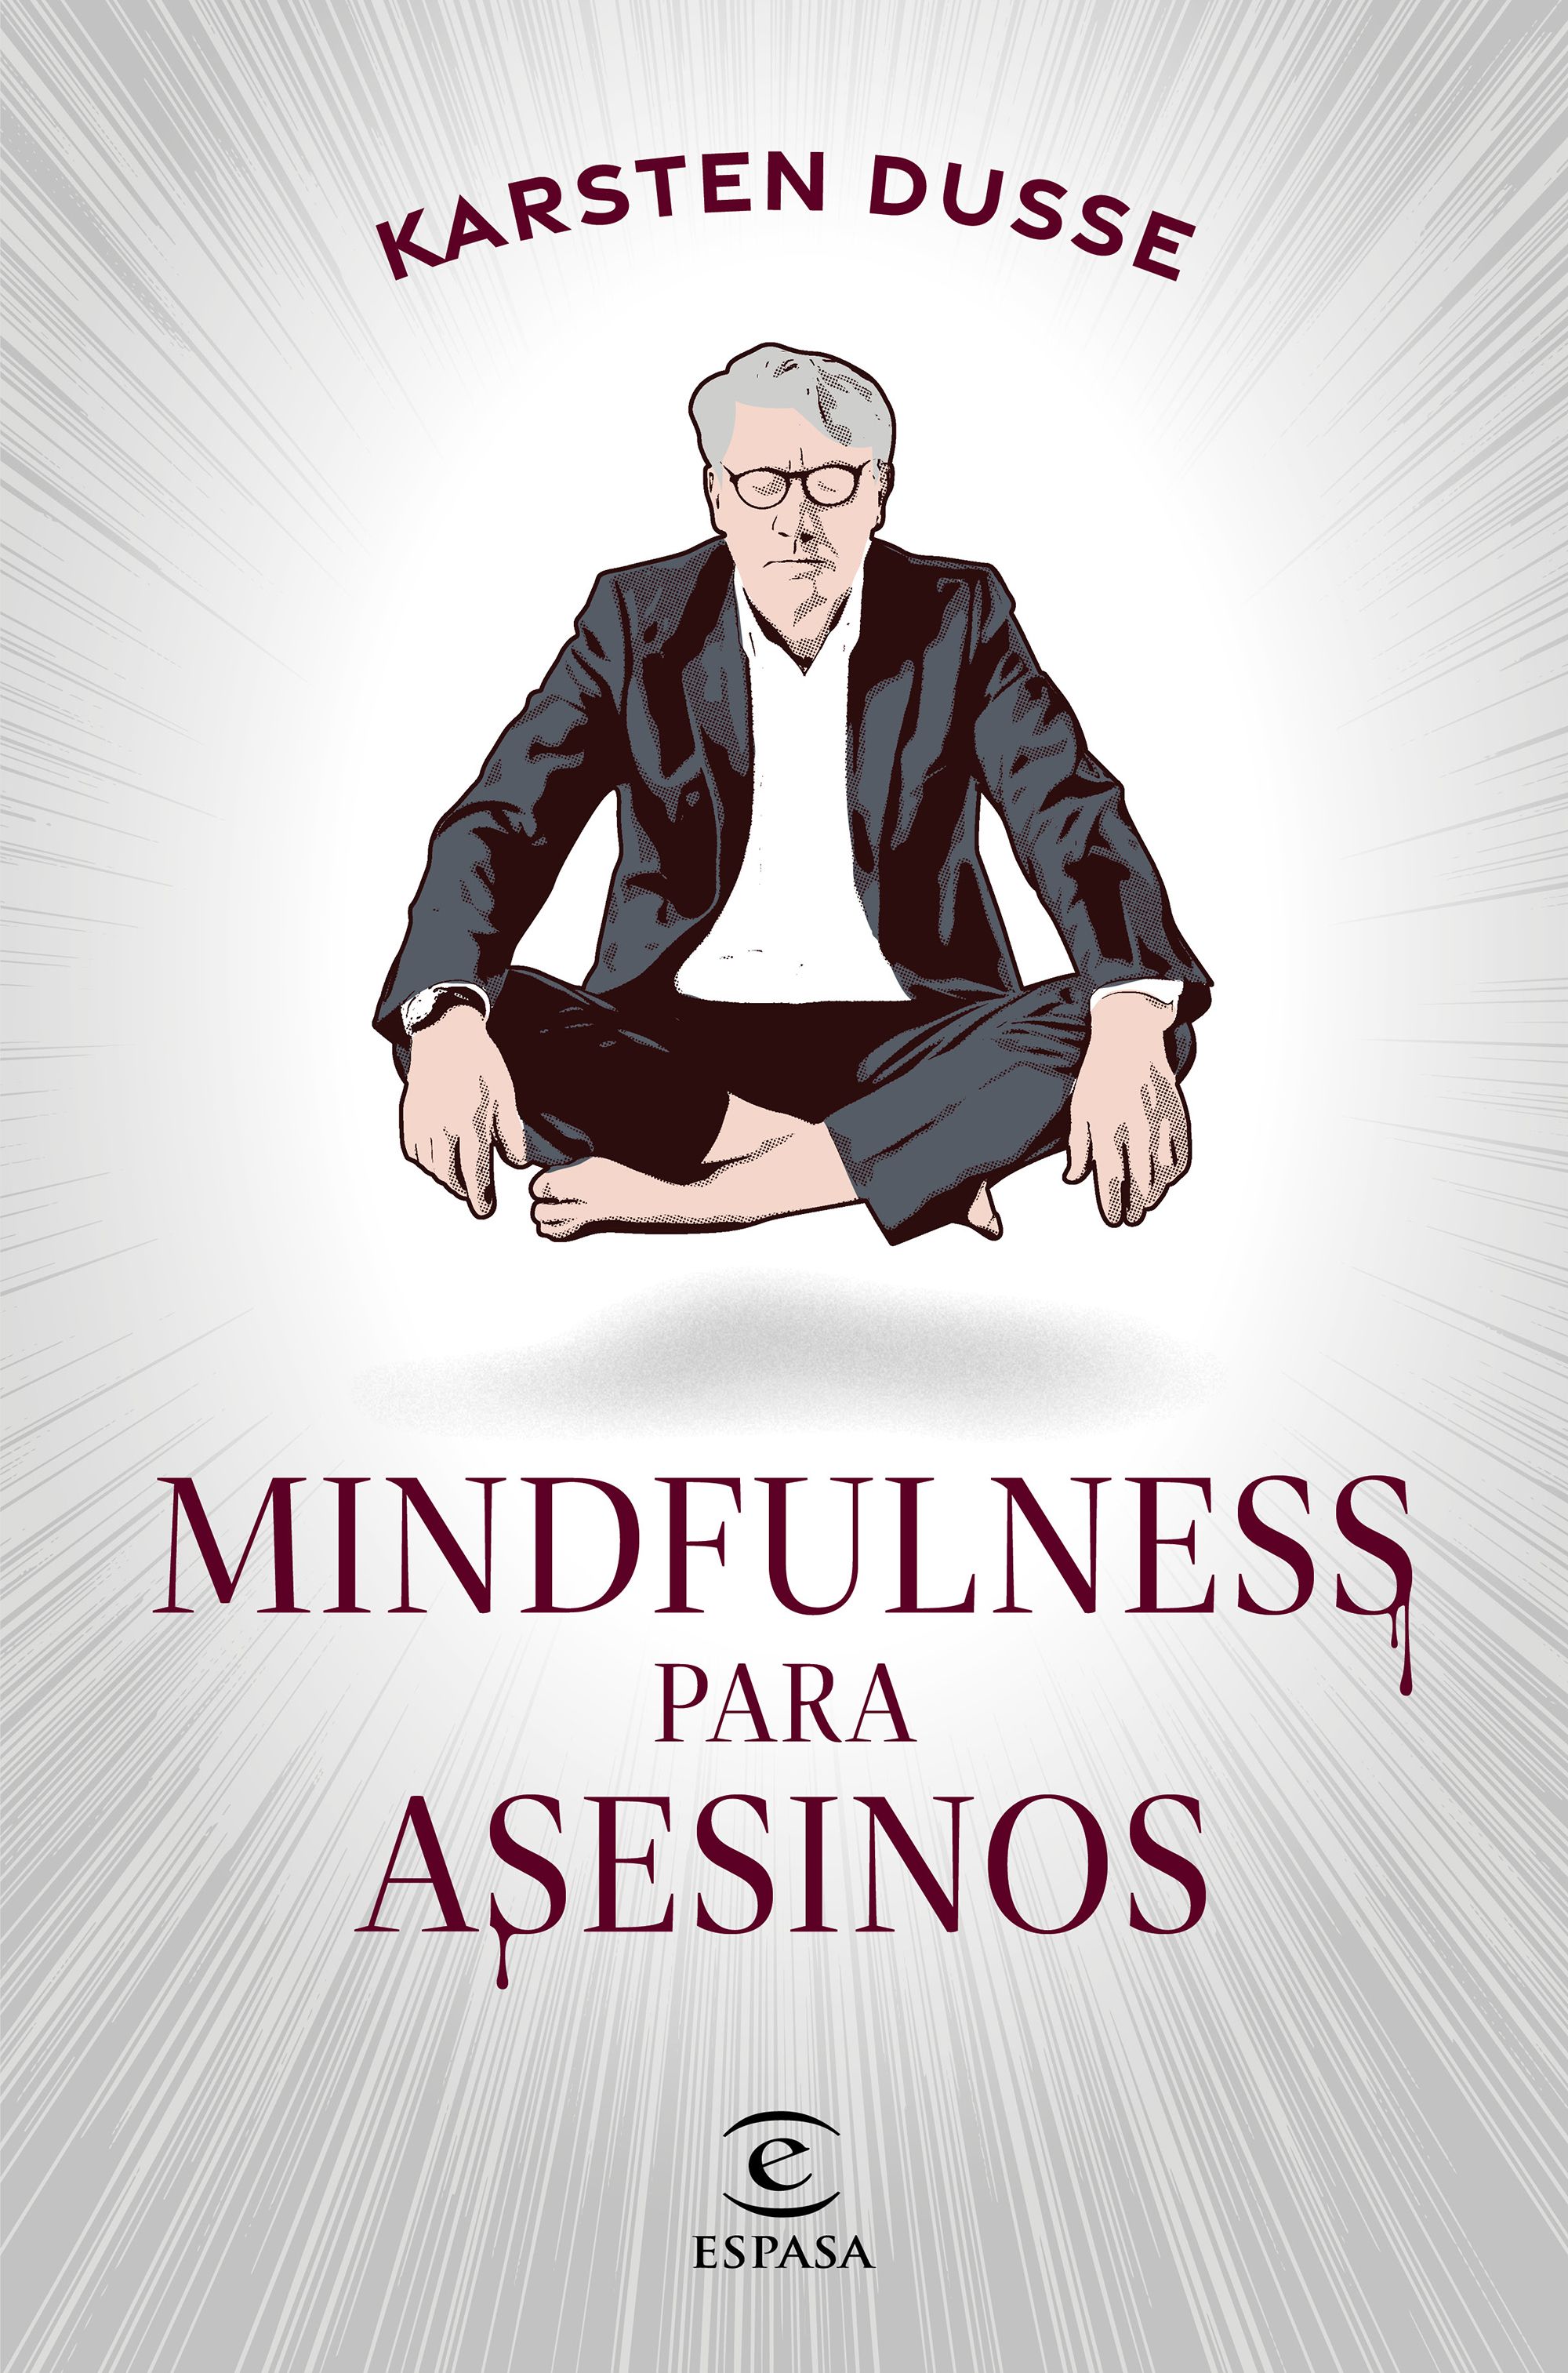 Mindfulness para asesinos - Karsten Dusse | PlanetadeLibros